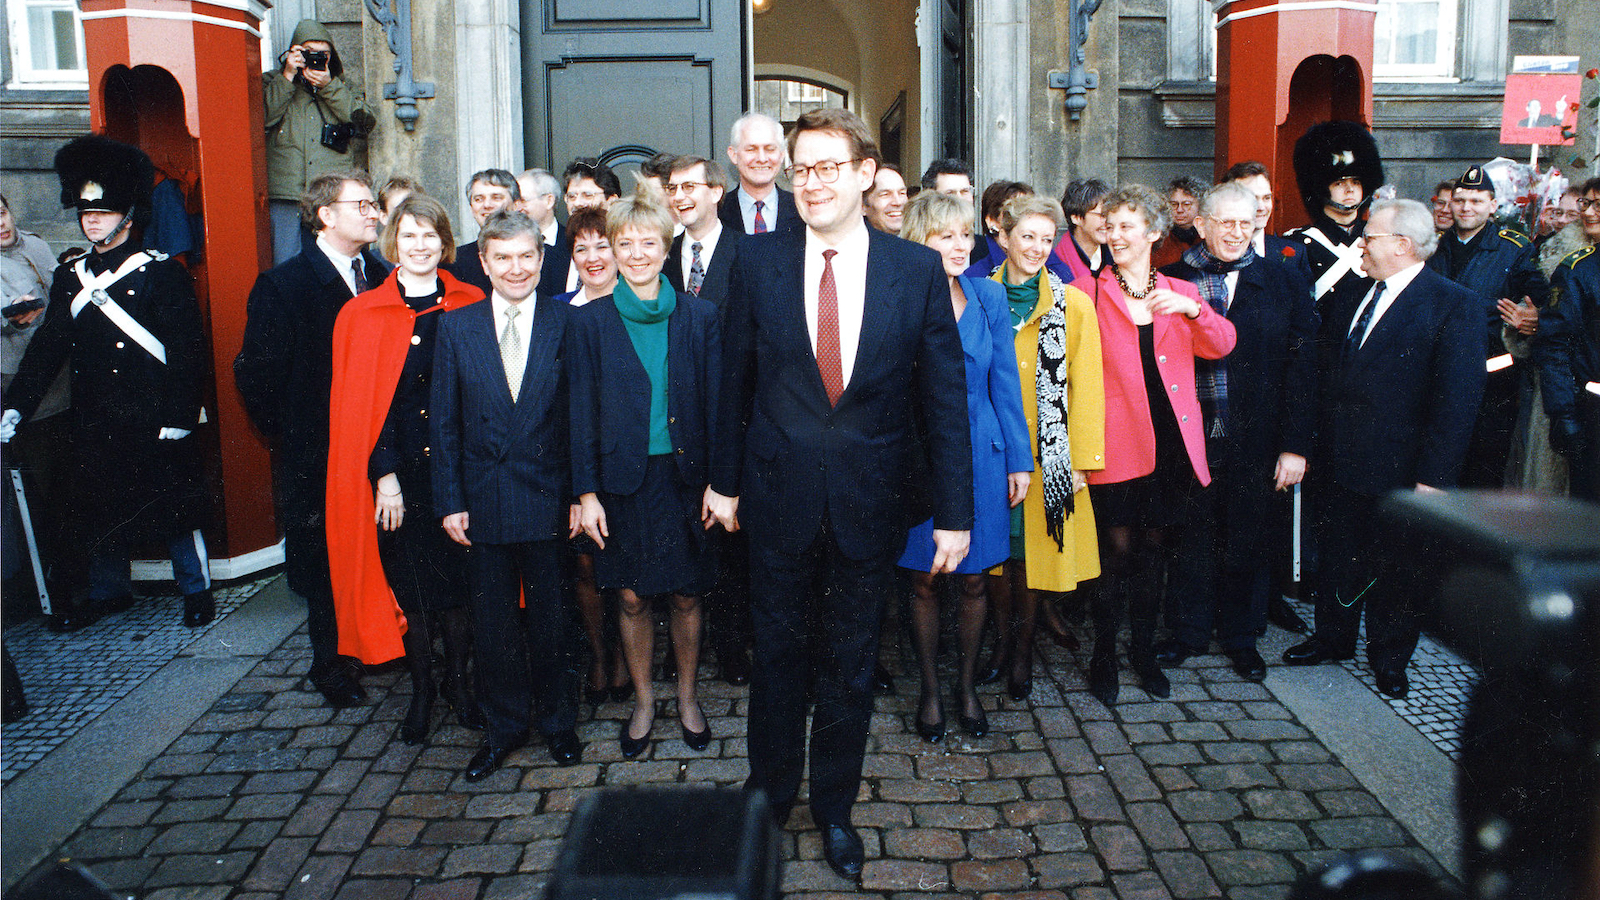 Dags dato: Nyrup præsenterer sin regering (25. januar 1993)